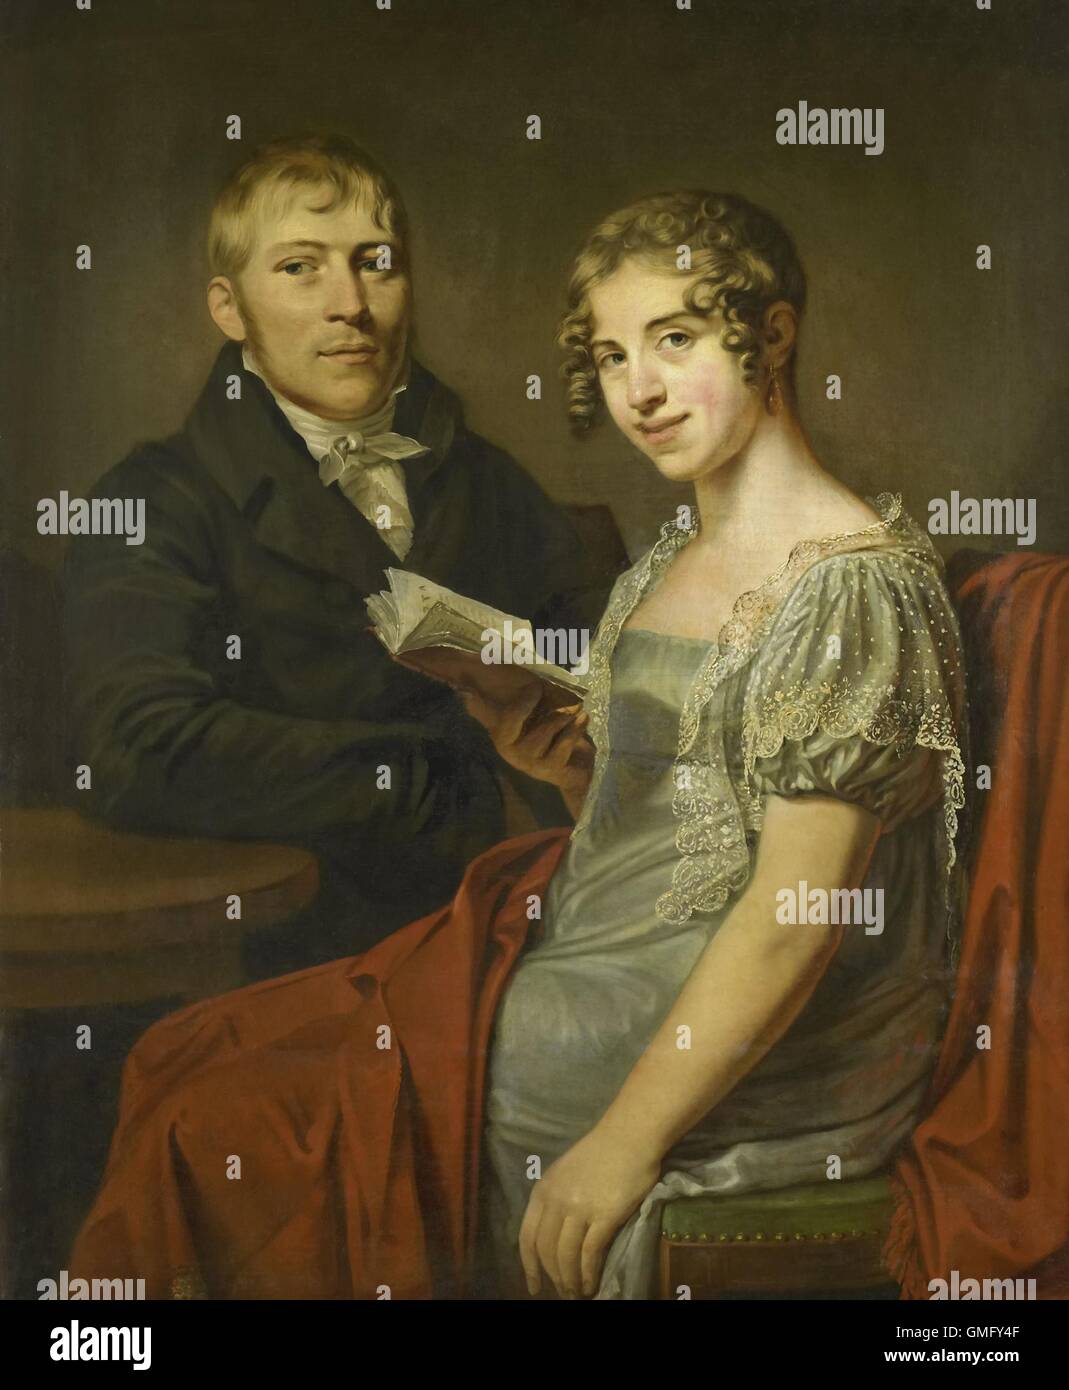 Hendrik Arend van den Brink and his Wife Lucretia Johanna van de Poll, by Louis Moritz, c. 1810, Dutch painting, oil on canvas (BSLOC 2016 2 80) Stock Photo